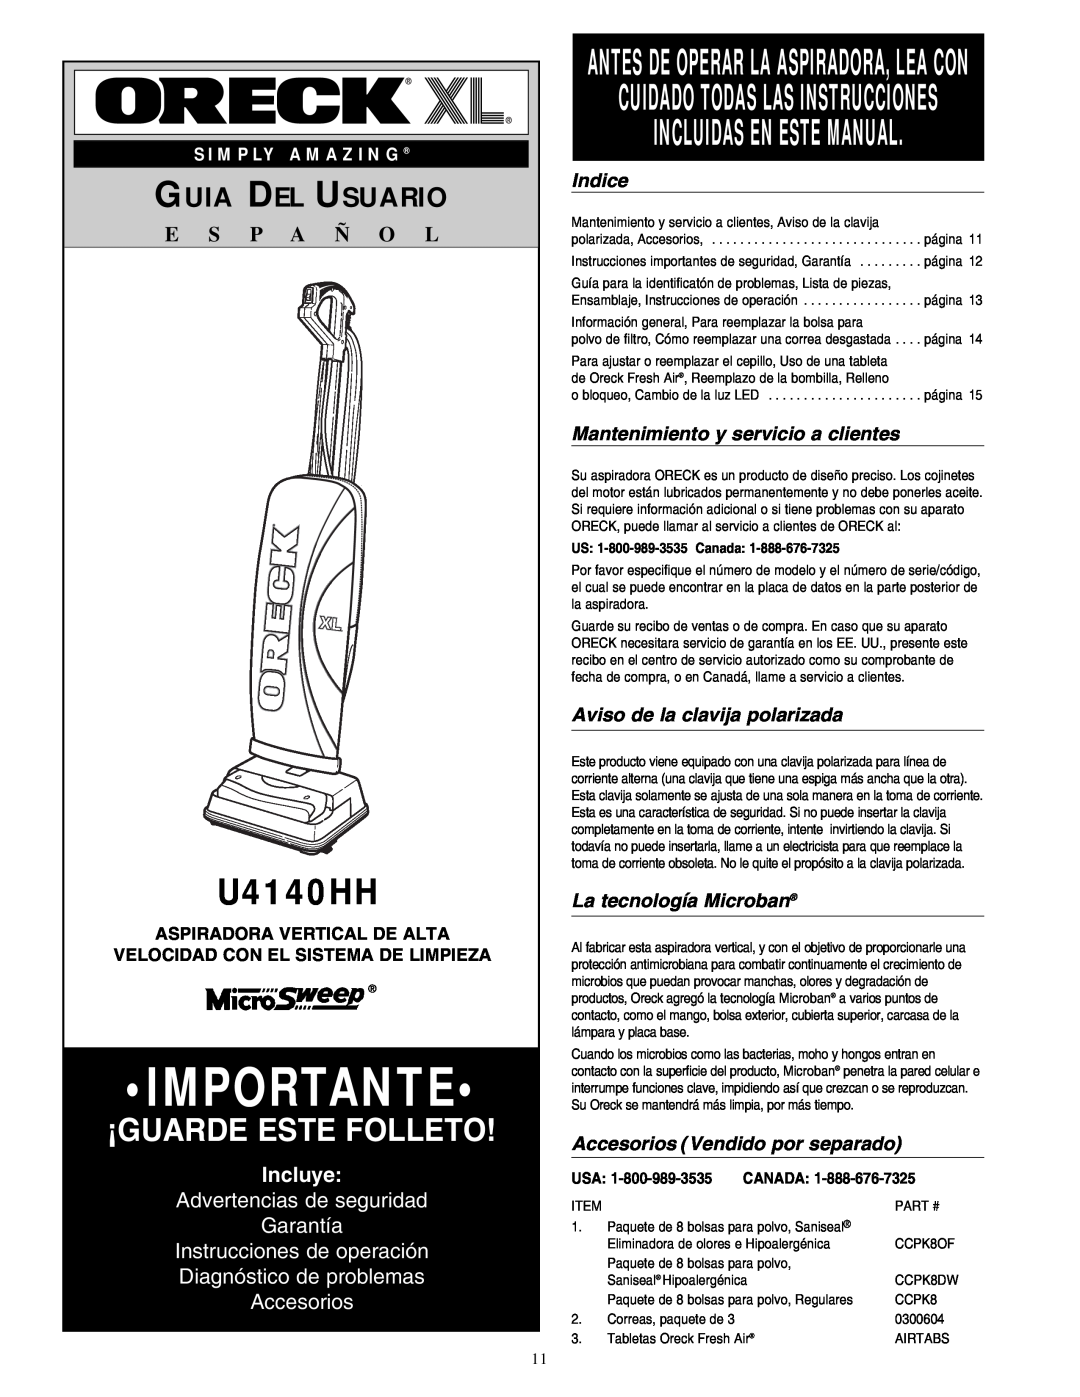 Oreck U4140HH Importante, ¡Guarde Este Folleto, Incluidas En Este Manual, Guia Del Usuario, E S P A Ñ O L, Incluye, Indice 